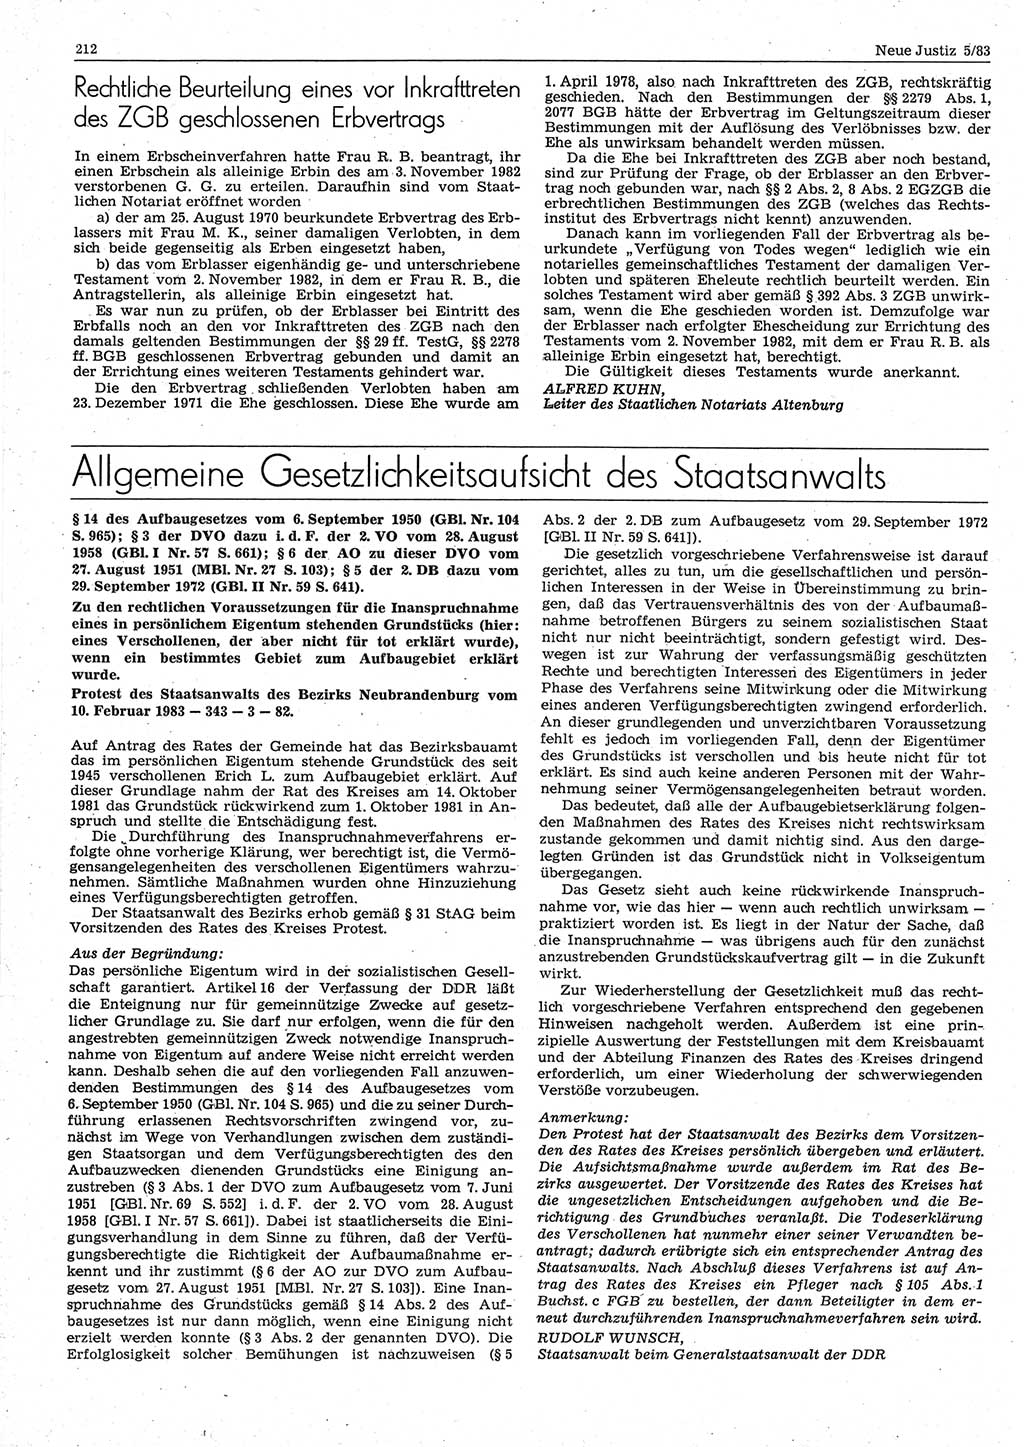 Neue Justiz (NJ), Zeitschrift für sozialistisches Recht und Gesetzlichkeit [Deutsche Demokratische Republik (DDR)], 37. Jahrgang 1983, Seite 212 (NJ DDR 1983, S. 212)